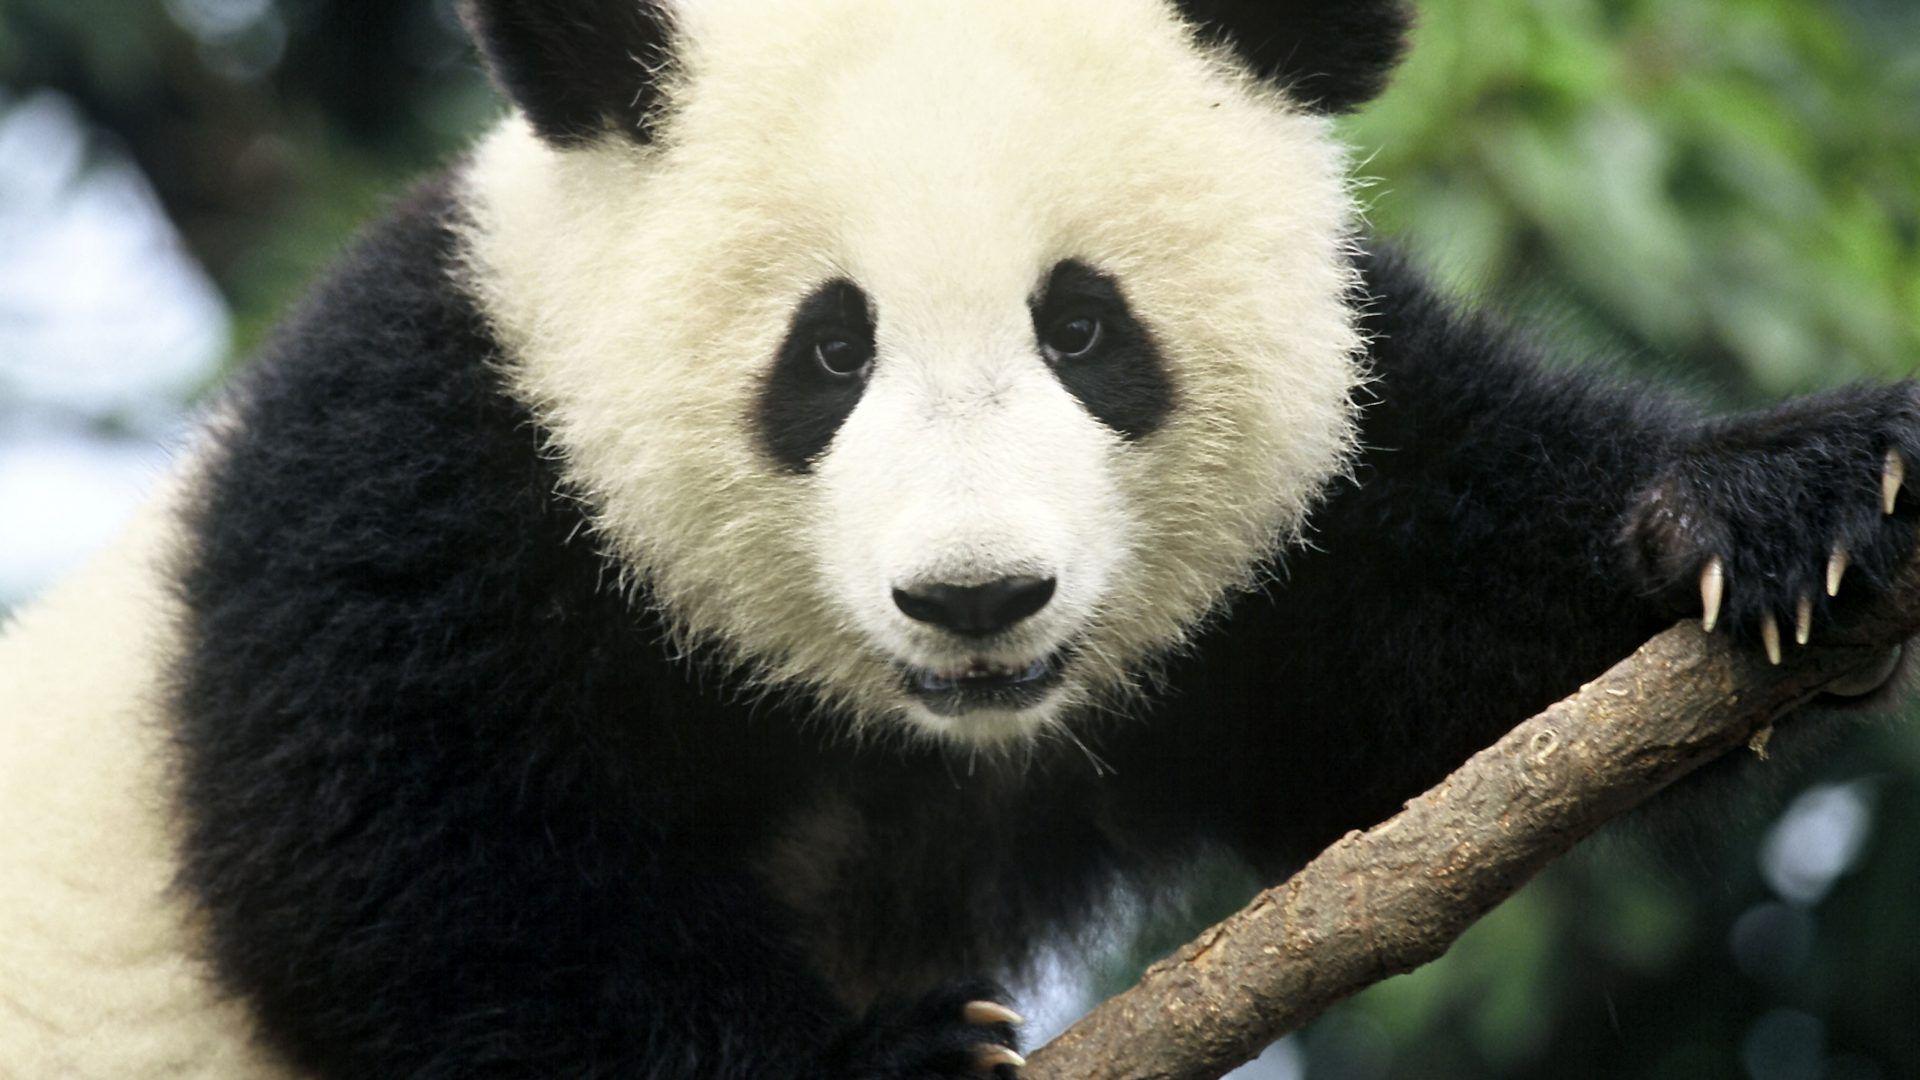 Pandas Tag wallpaper: Bears Baby Baer Cute Panda Pandas